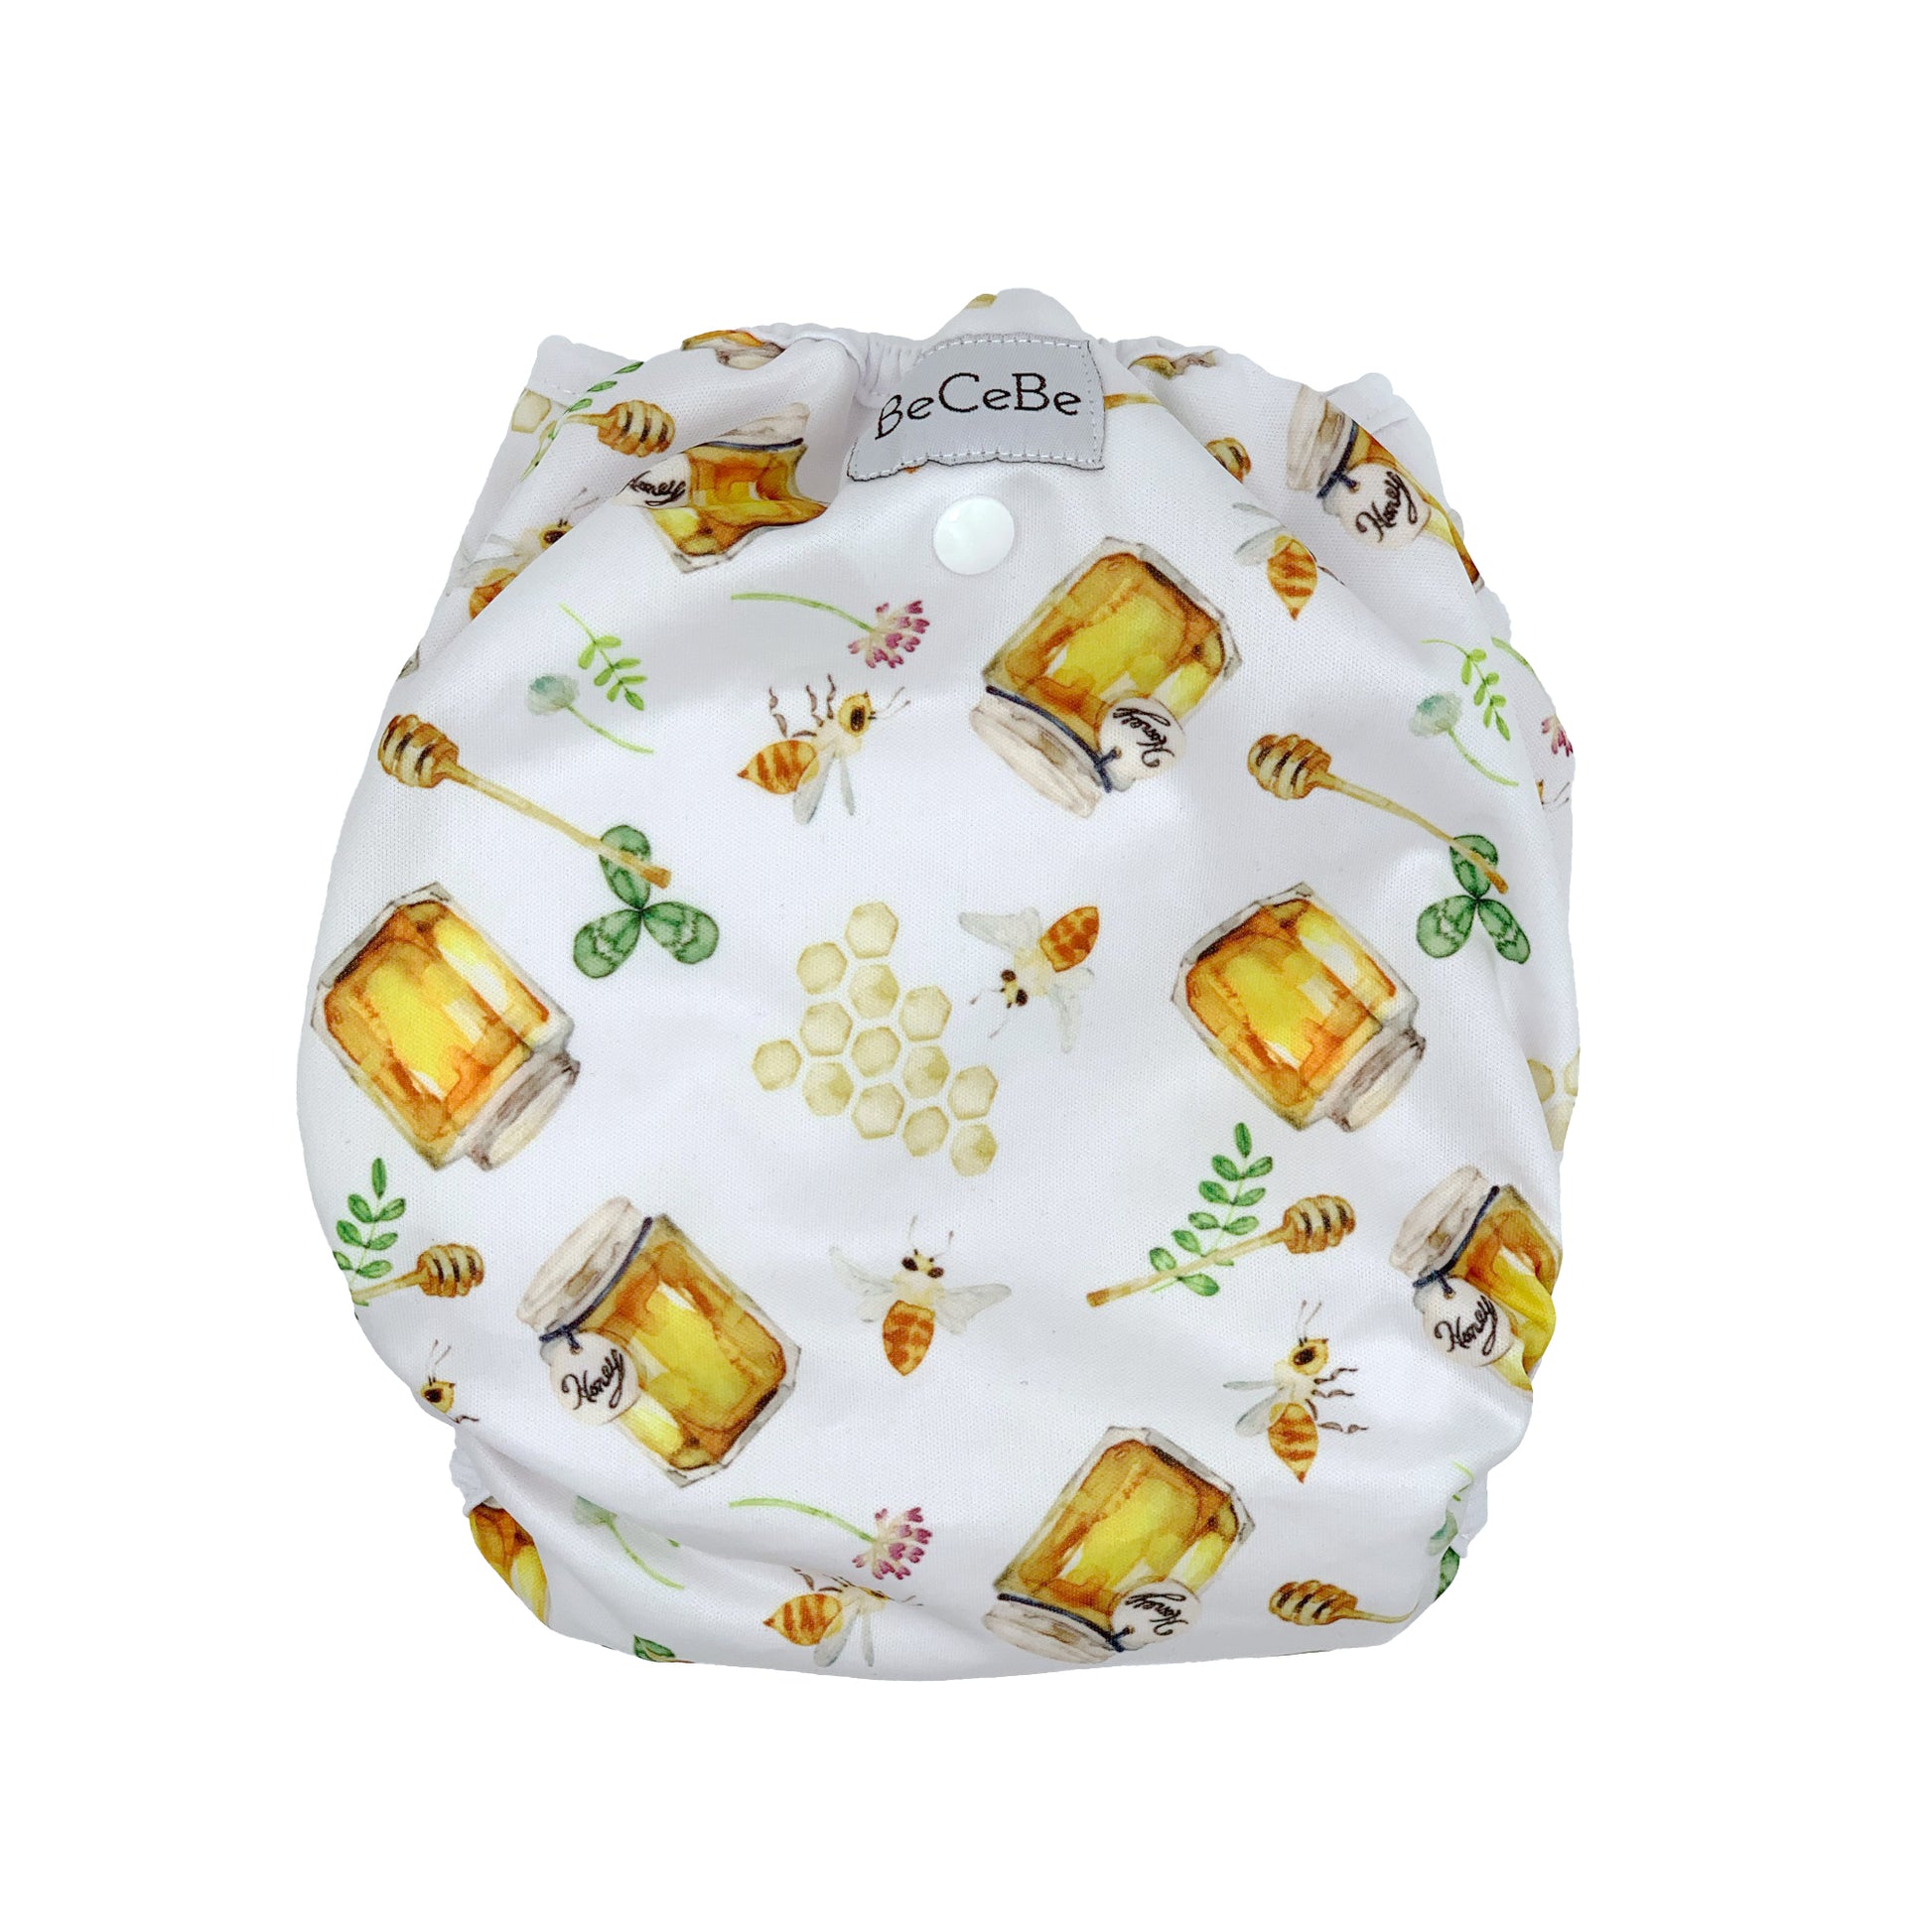 Extra Roomy Diaper Cover – BeCeBe Cloth